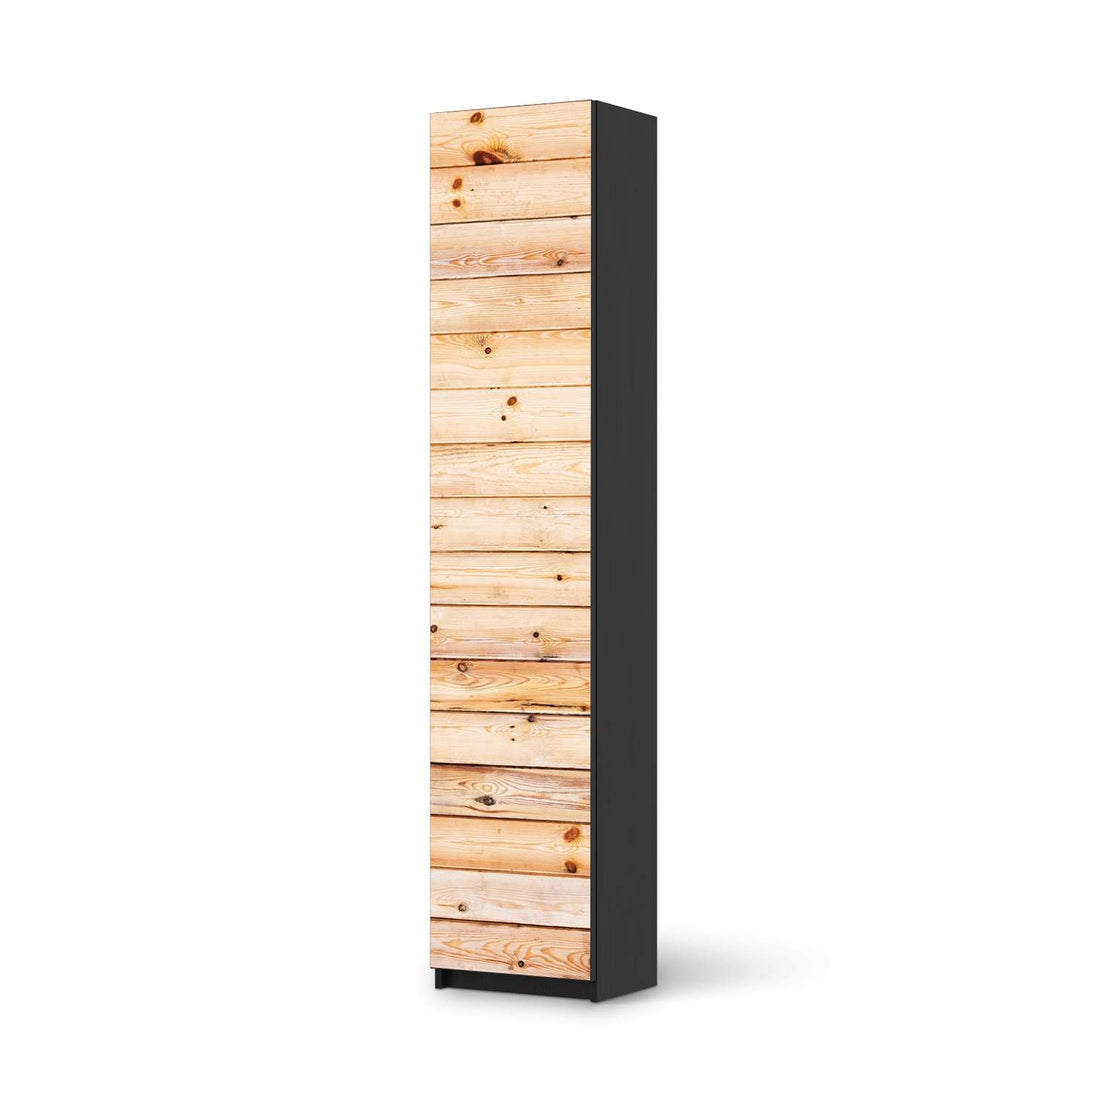 Klebefolie Bright Planks - IKEA Pax Schrank 236 cm Höhe - 1 Tür - schwarz